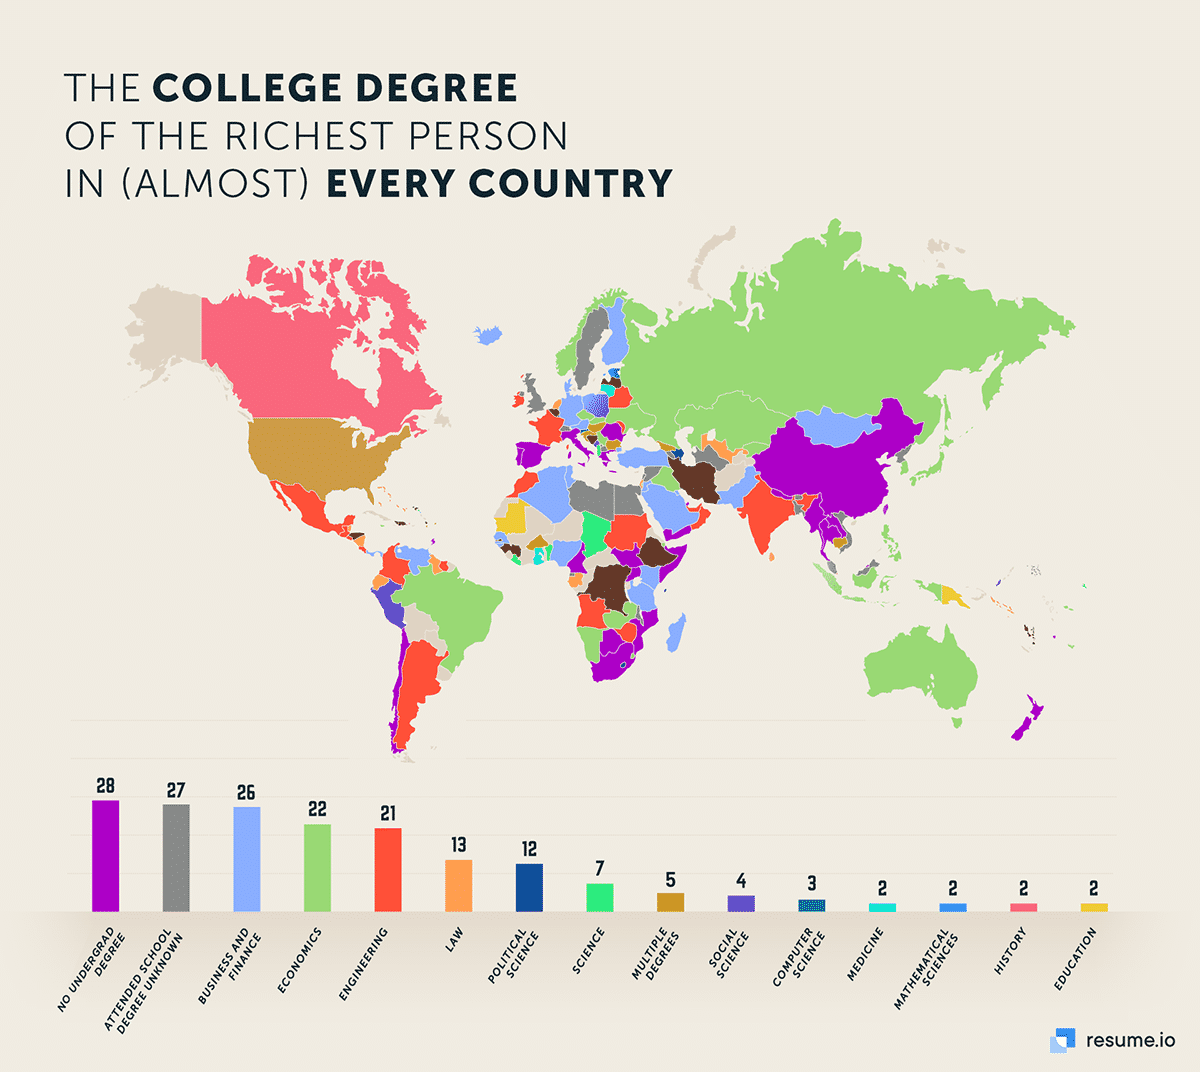 högskoleexamen för de rikaste personer i nästan alla länder